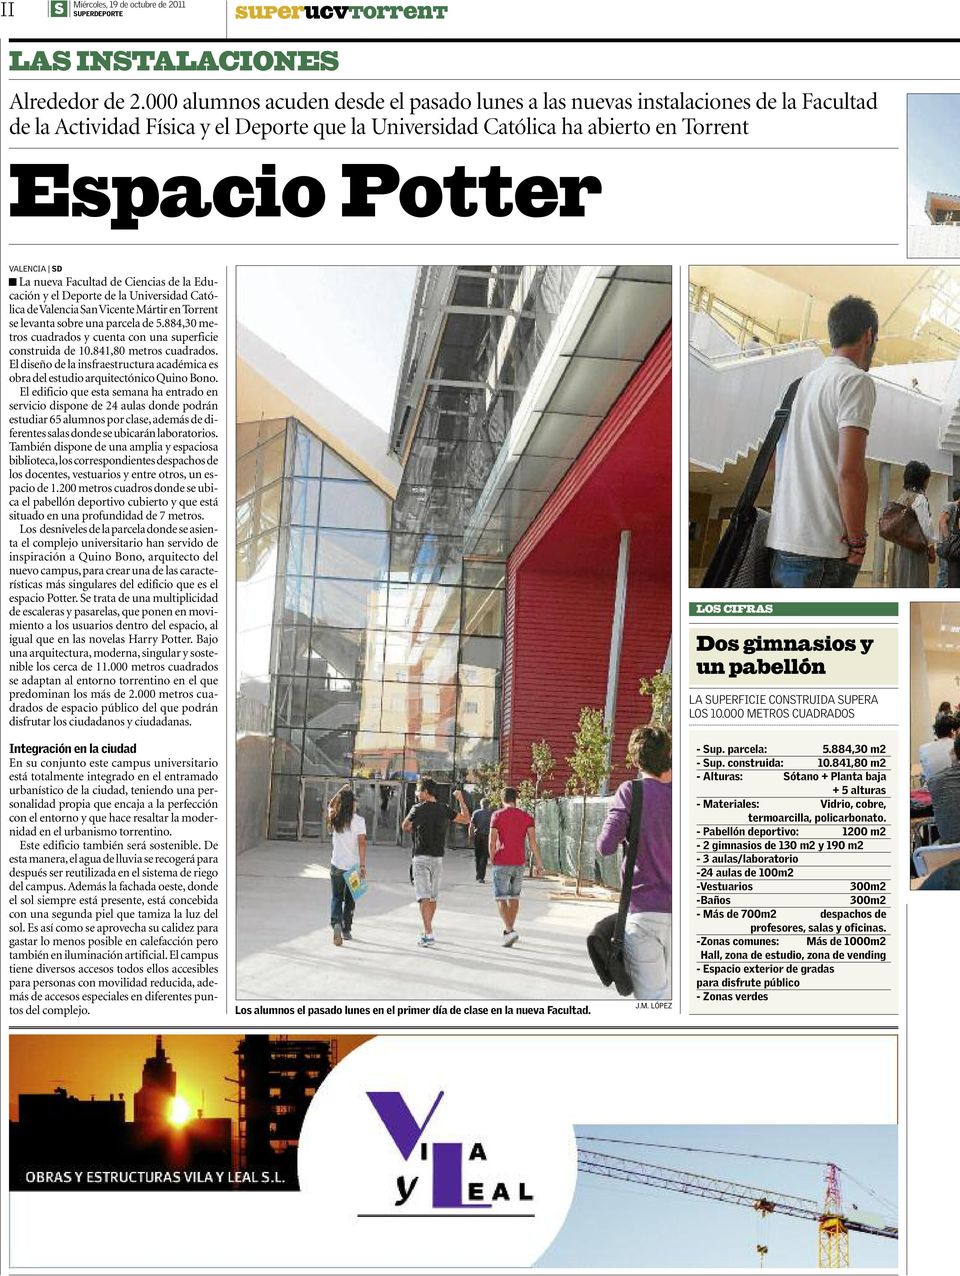 nueva Facultad de Ciencias de la Educación y el Deporte de la Universidad Católica de Valencia an Vicente Mártir en Torrent se levanta sobre una parcela de 5.